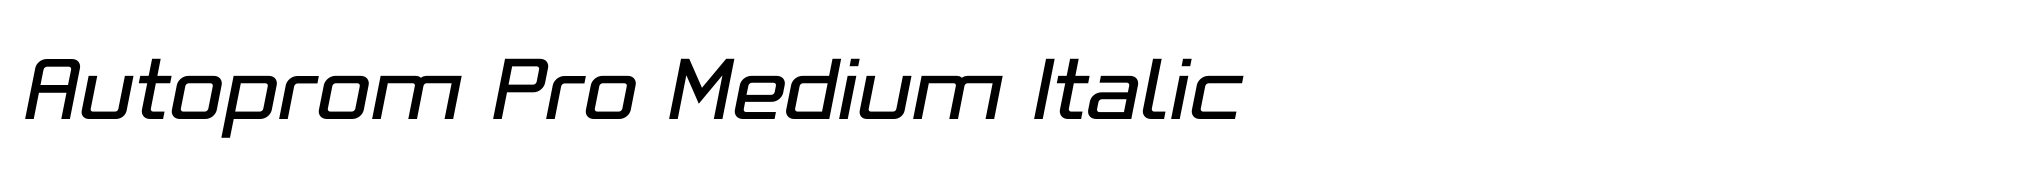 Autoprom Pro Medium Italic image